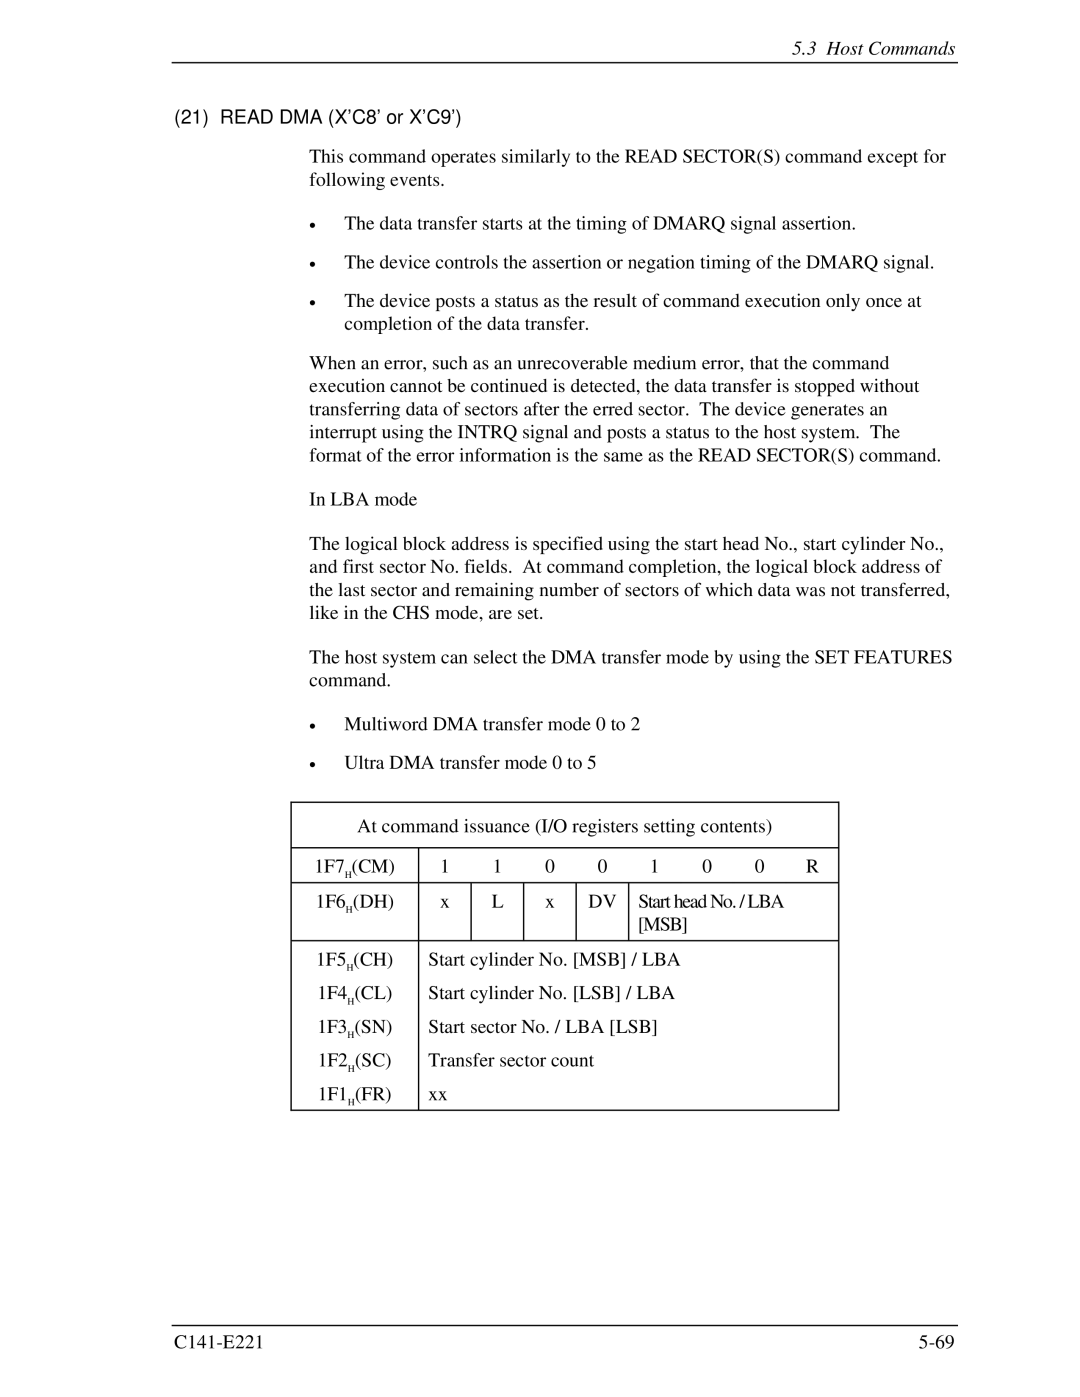 Fujitsu MHV2060AS, MHV2080AS, MHV2040AS manual Read DMA X’C8’ or X’C9’, Msb 